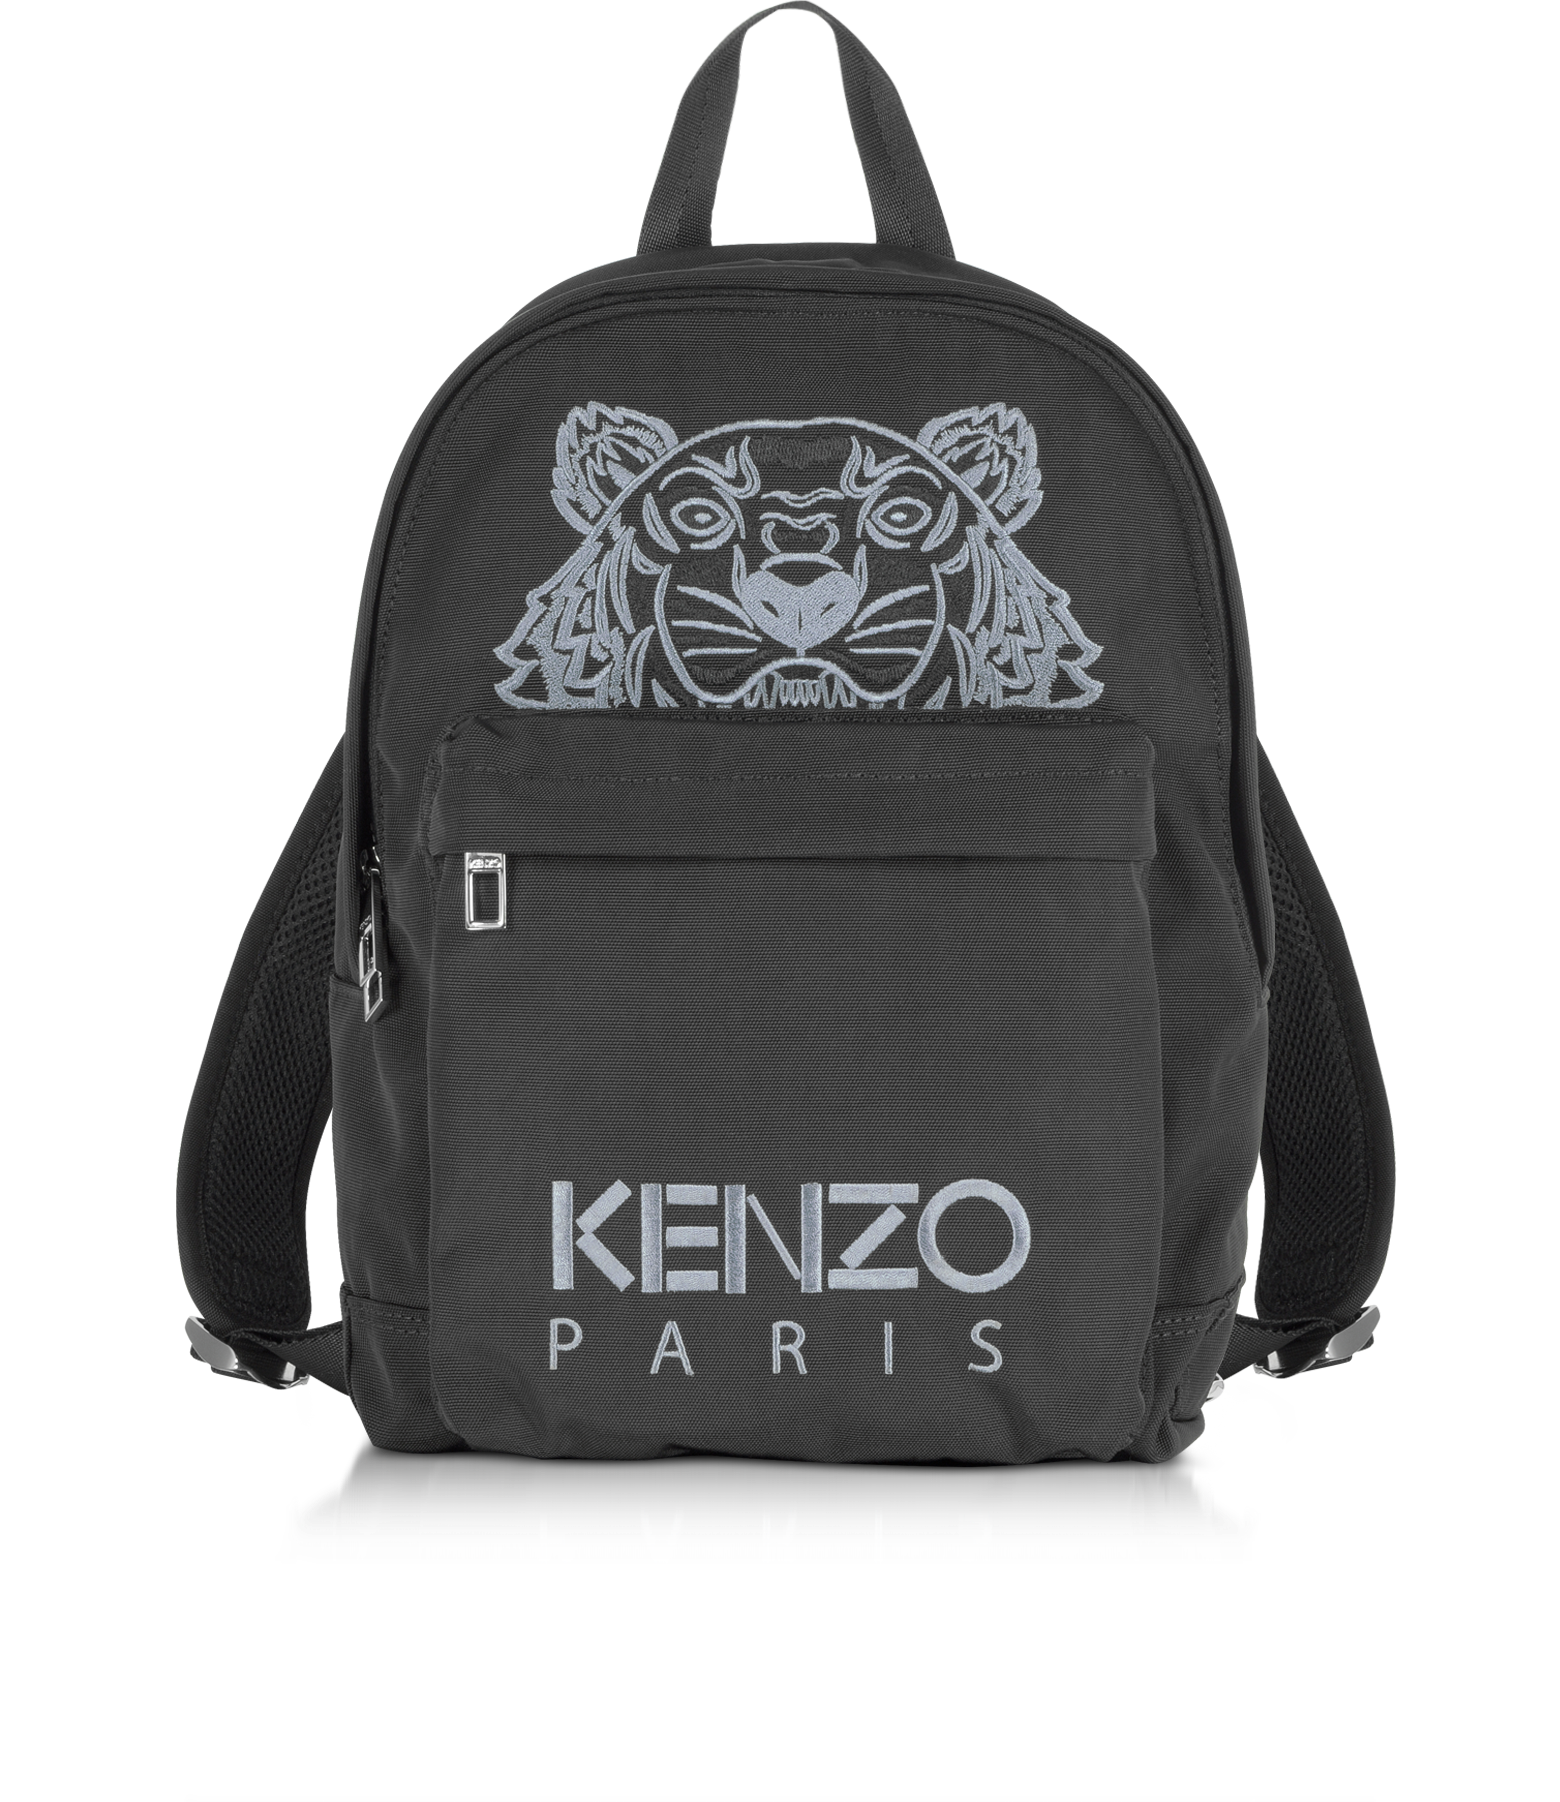 cheap kenzo backpack